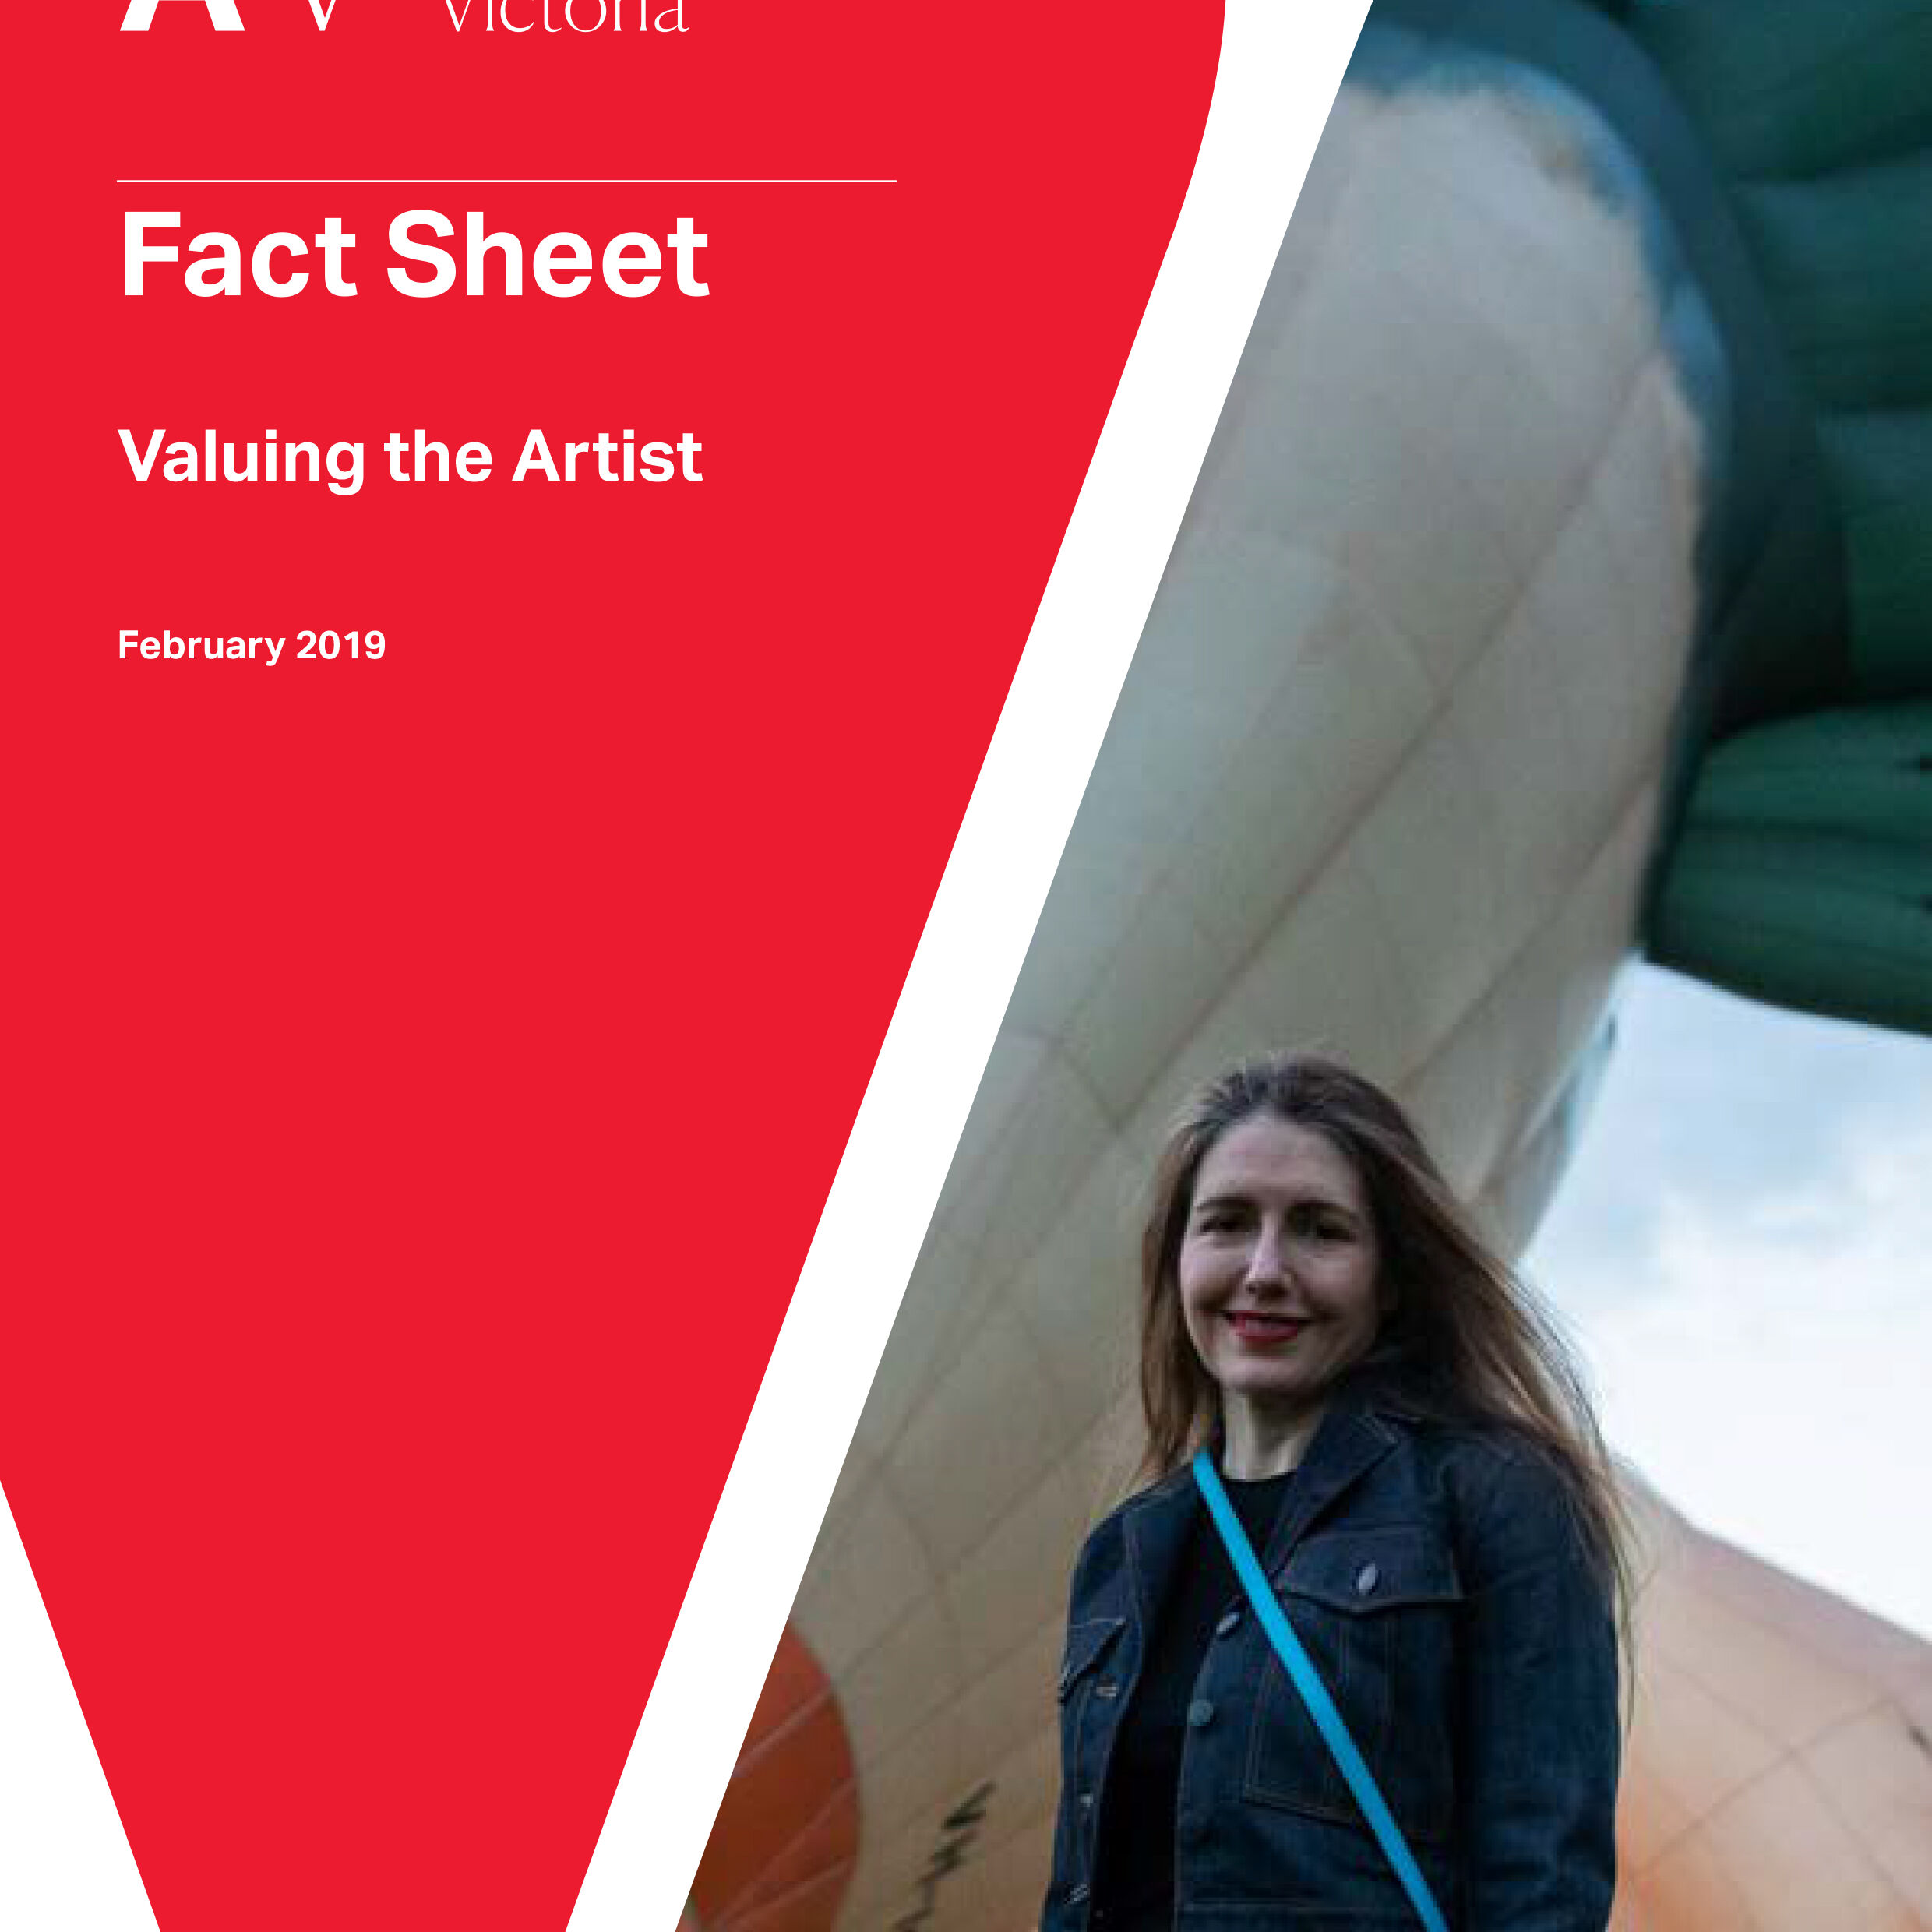 PGAV Fact Sheet Valuing the Artist Cover